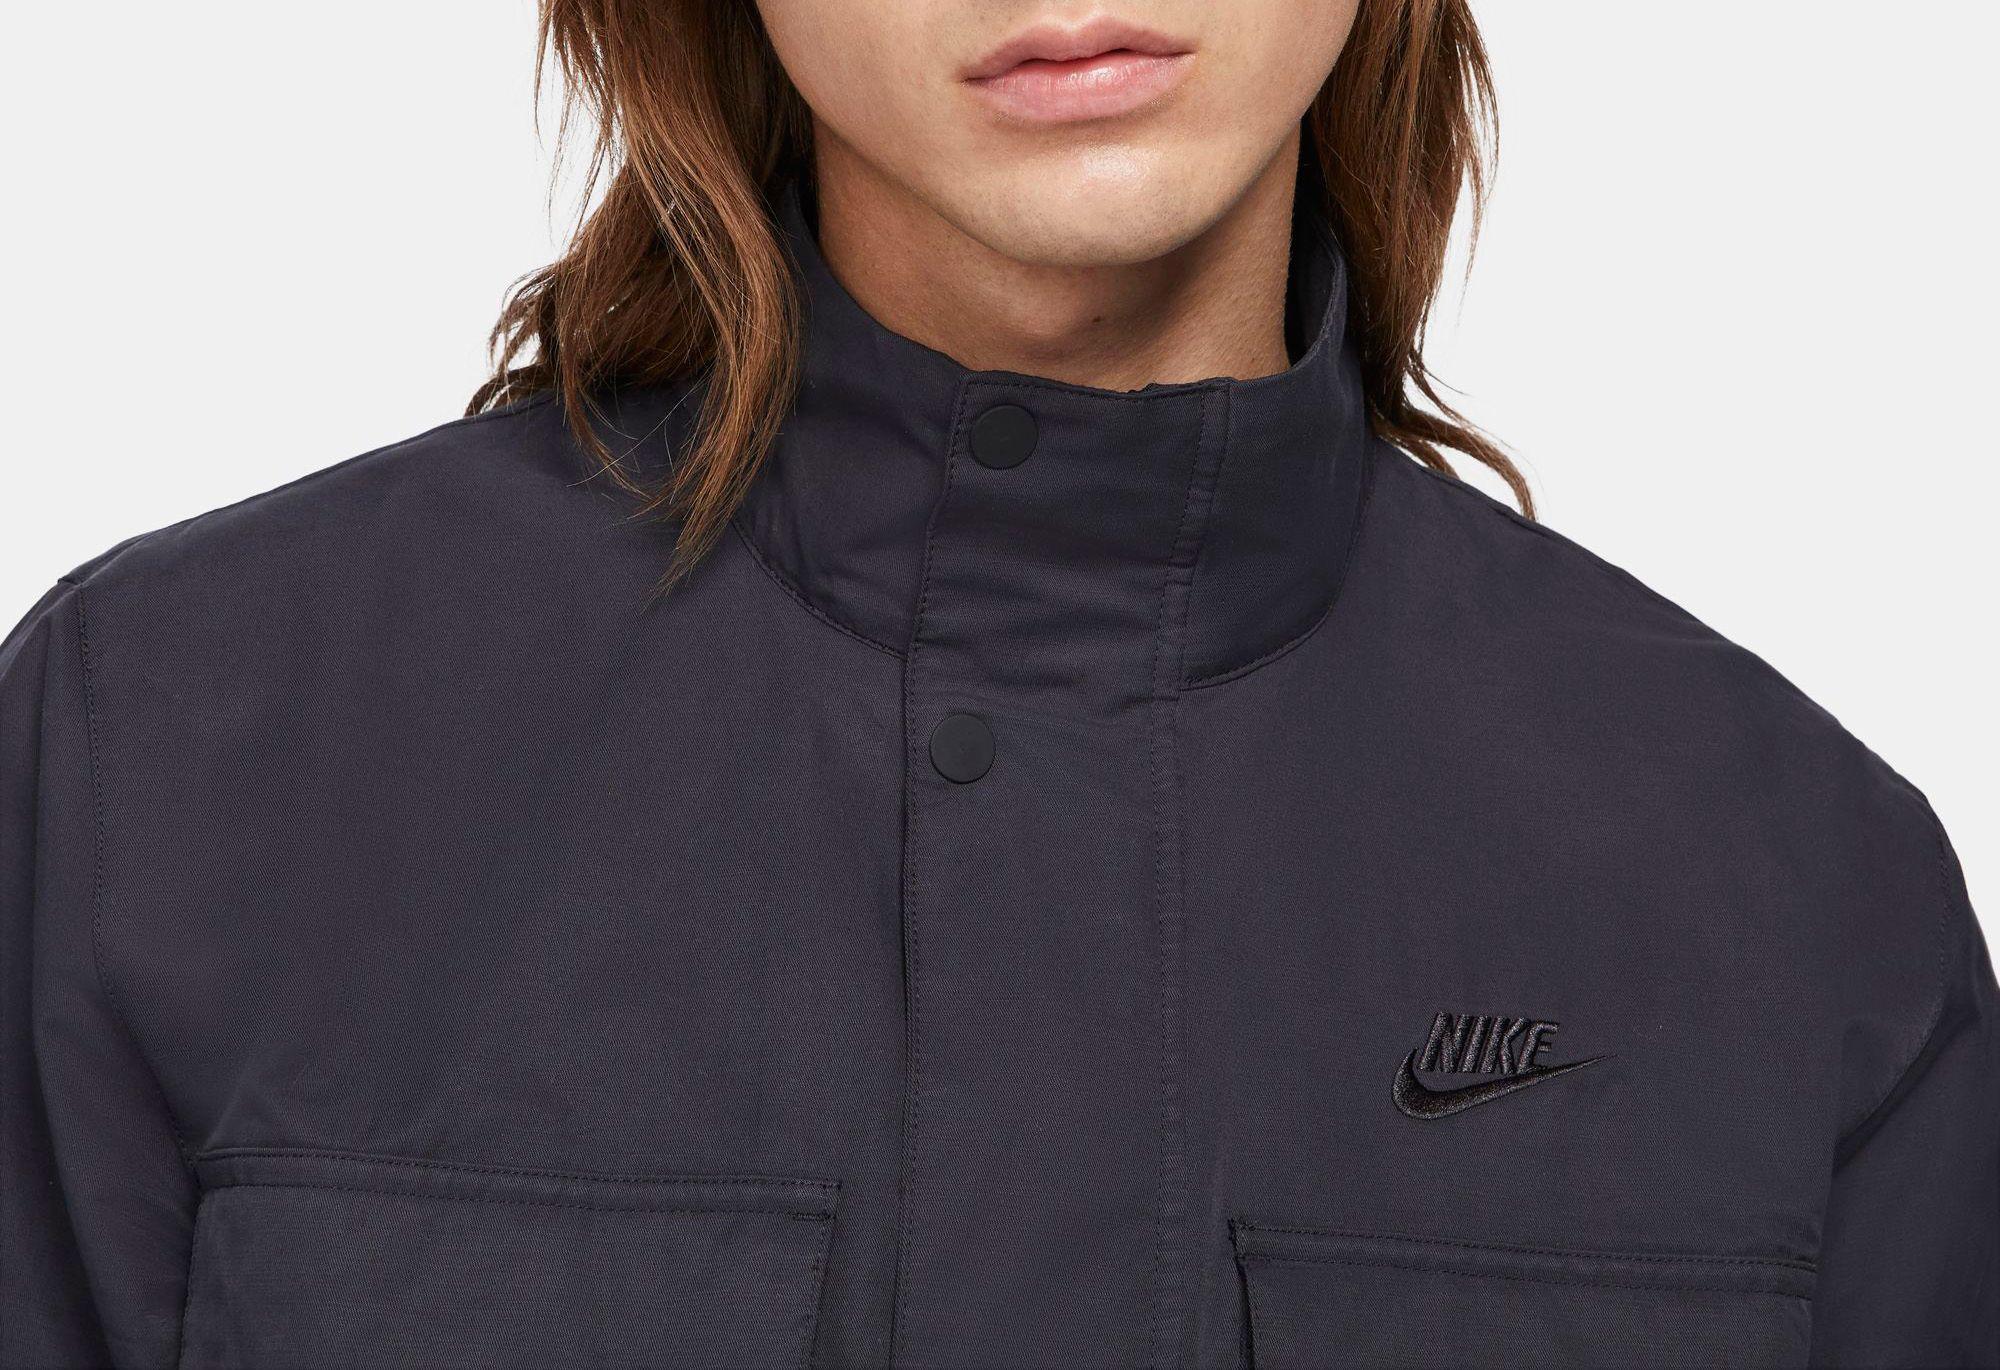 Nike Sportswear M65 Woven Jacket in Black for Men - Lyst